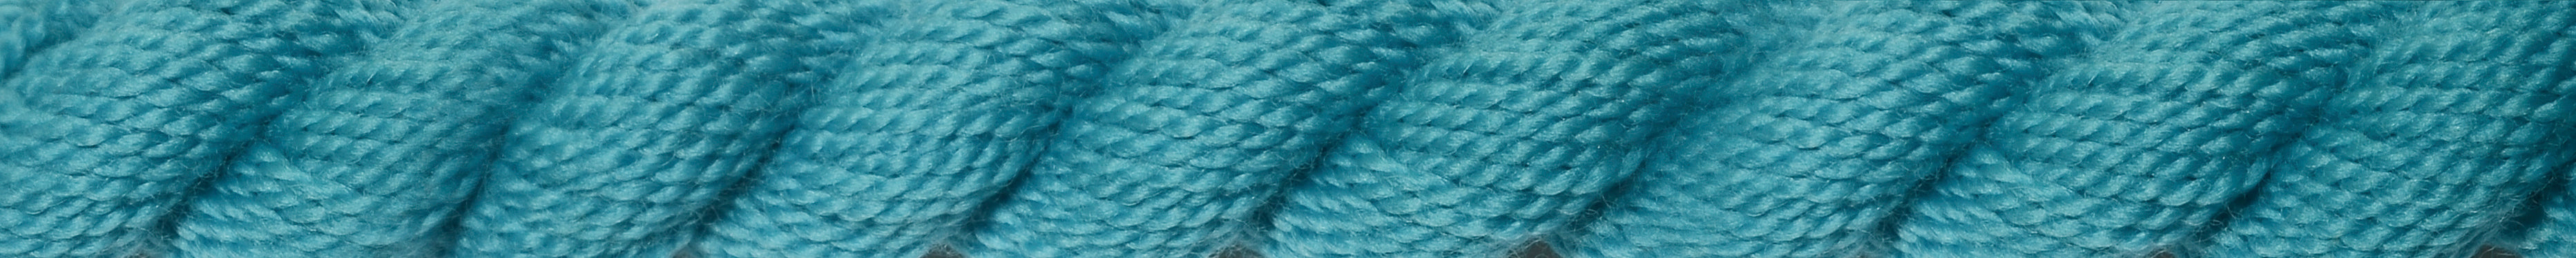 WIL - Vineyard Silk - Merino Wool - M-1223 - Ocean Breeze